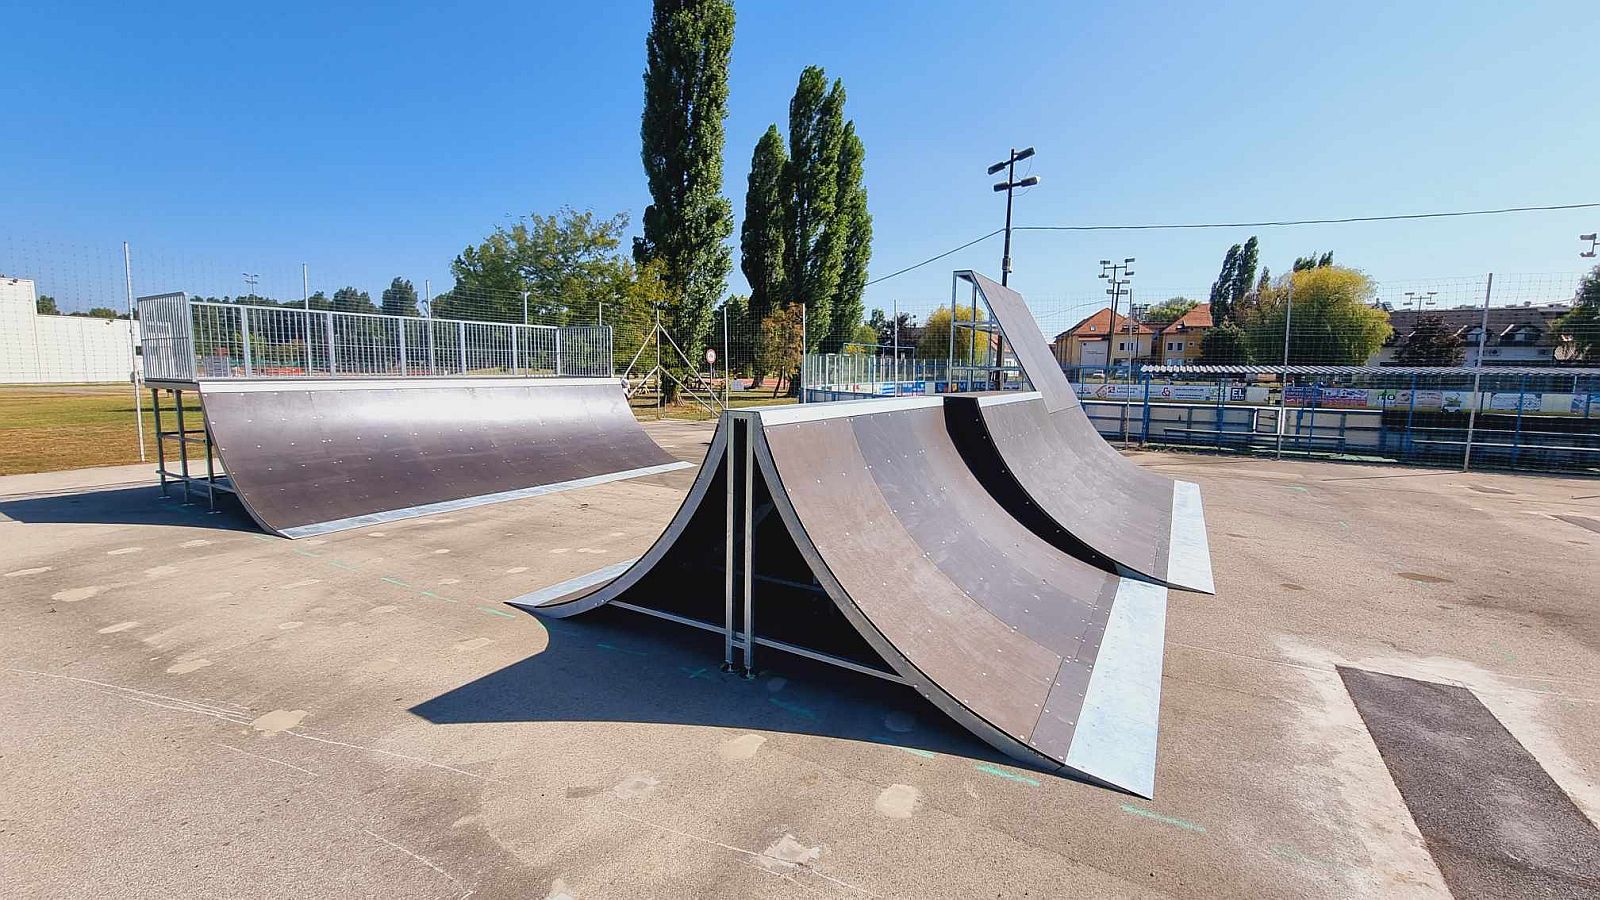 Négy új elemmel nyitott a Bregyó újjáépített skateparkja - tovább épül ősszel a pálya